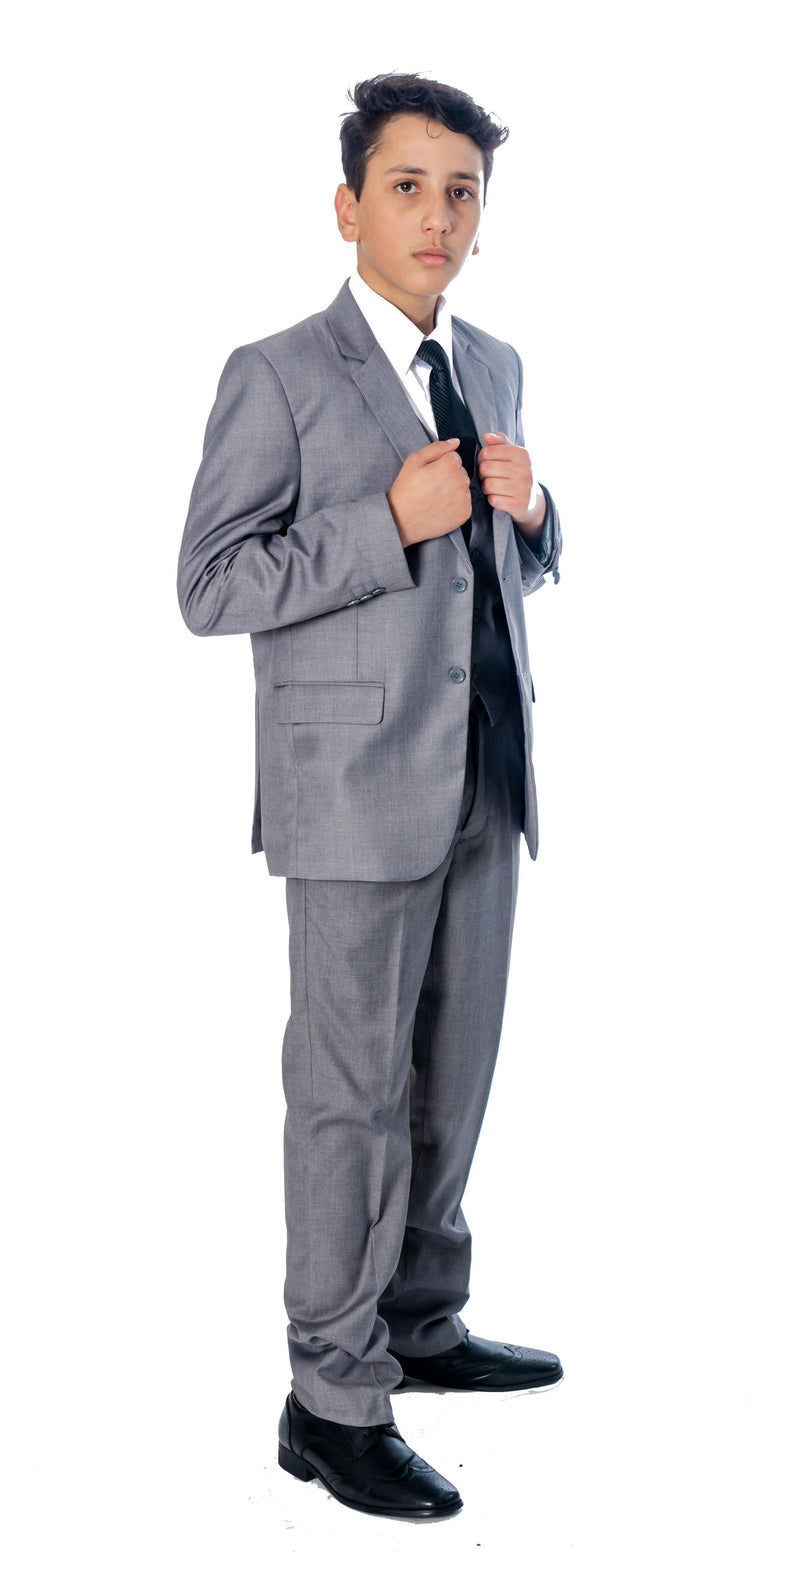 Boys 5 Piece Suit Color Light Grey - Upscale Men's Fashion